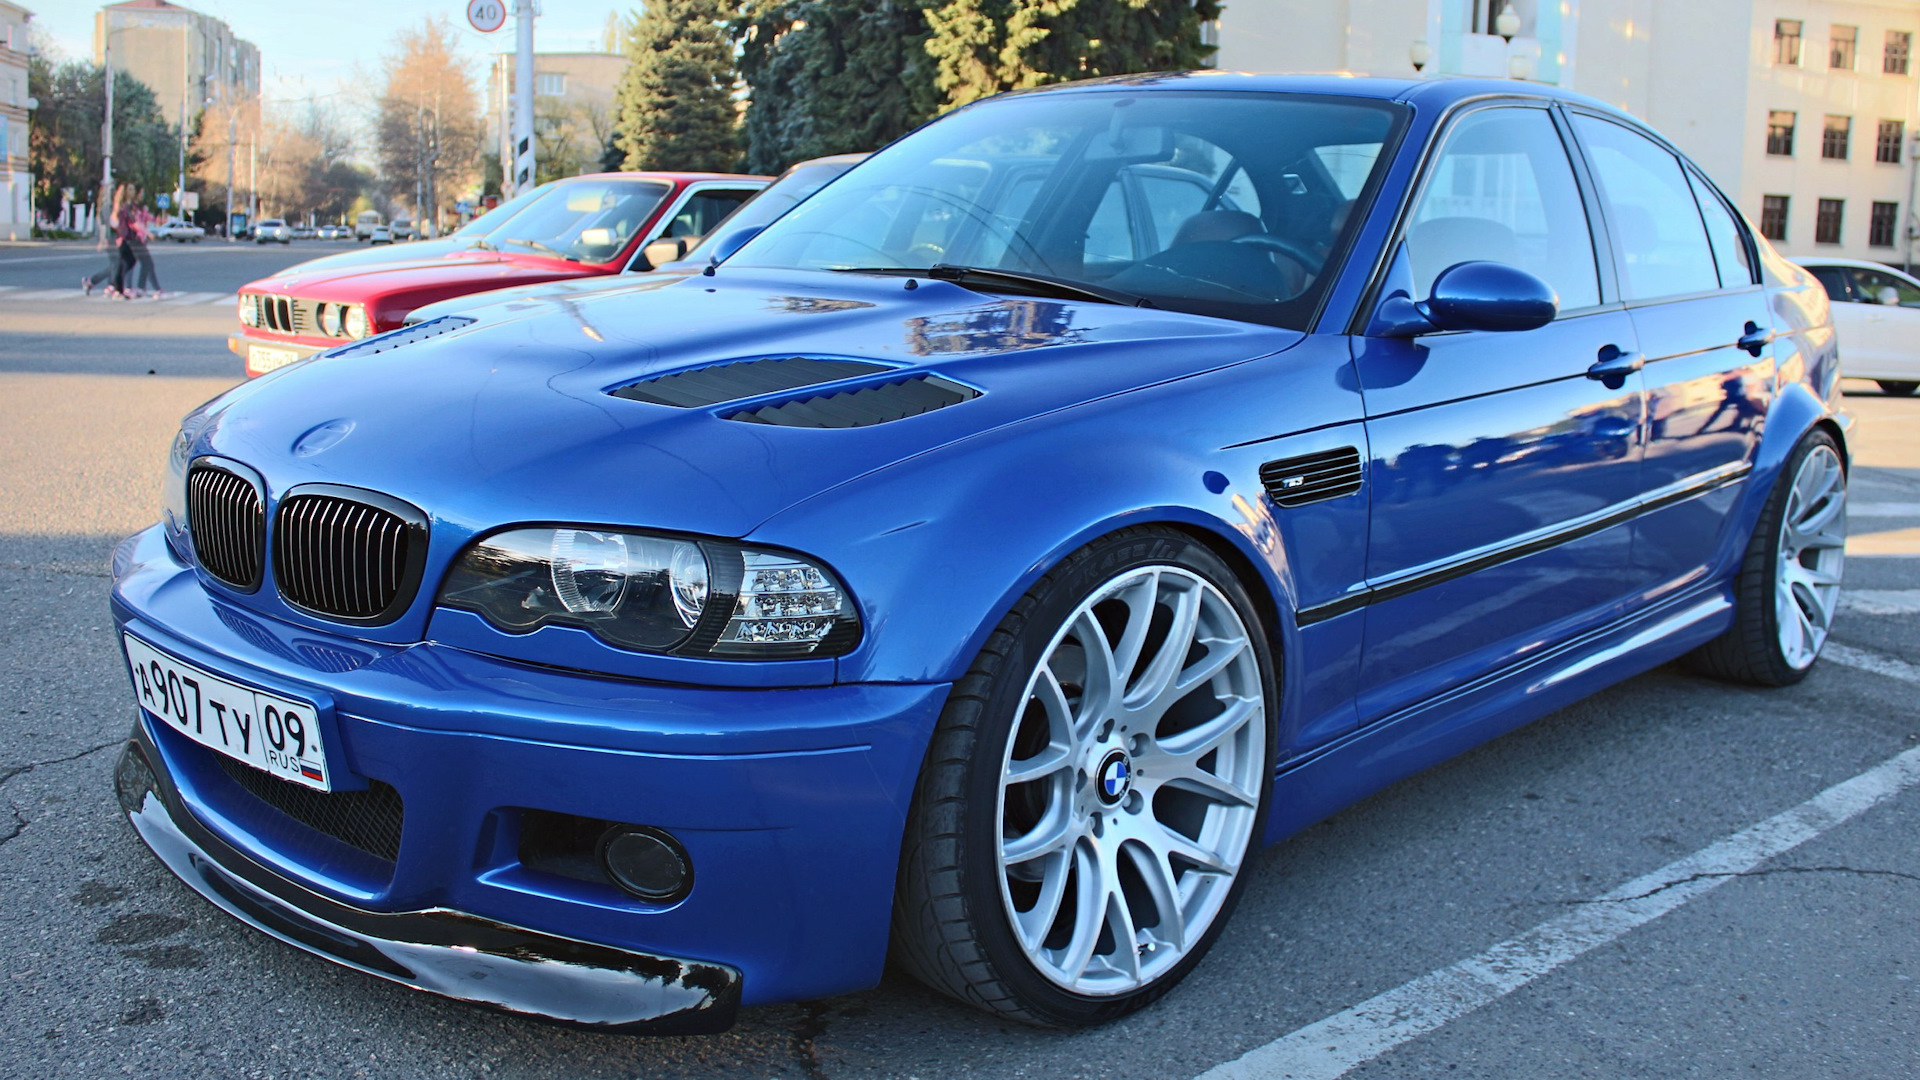 Е46 1. БМВ м3 е46 седан. BMW e46 Coupe. БМВ е46 седан синяя. BMW m3 e46 sedan.